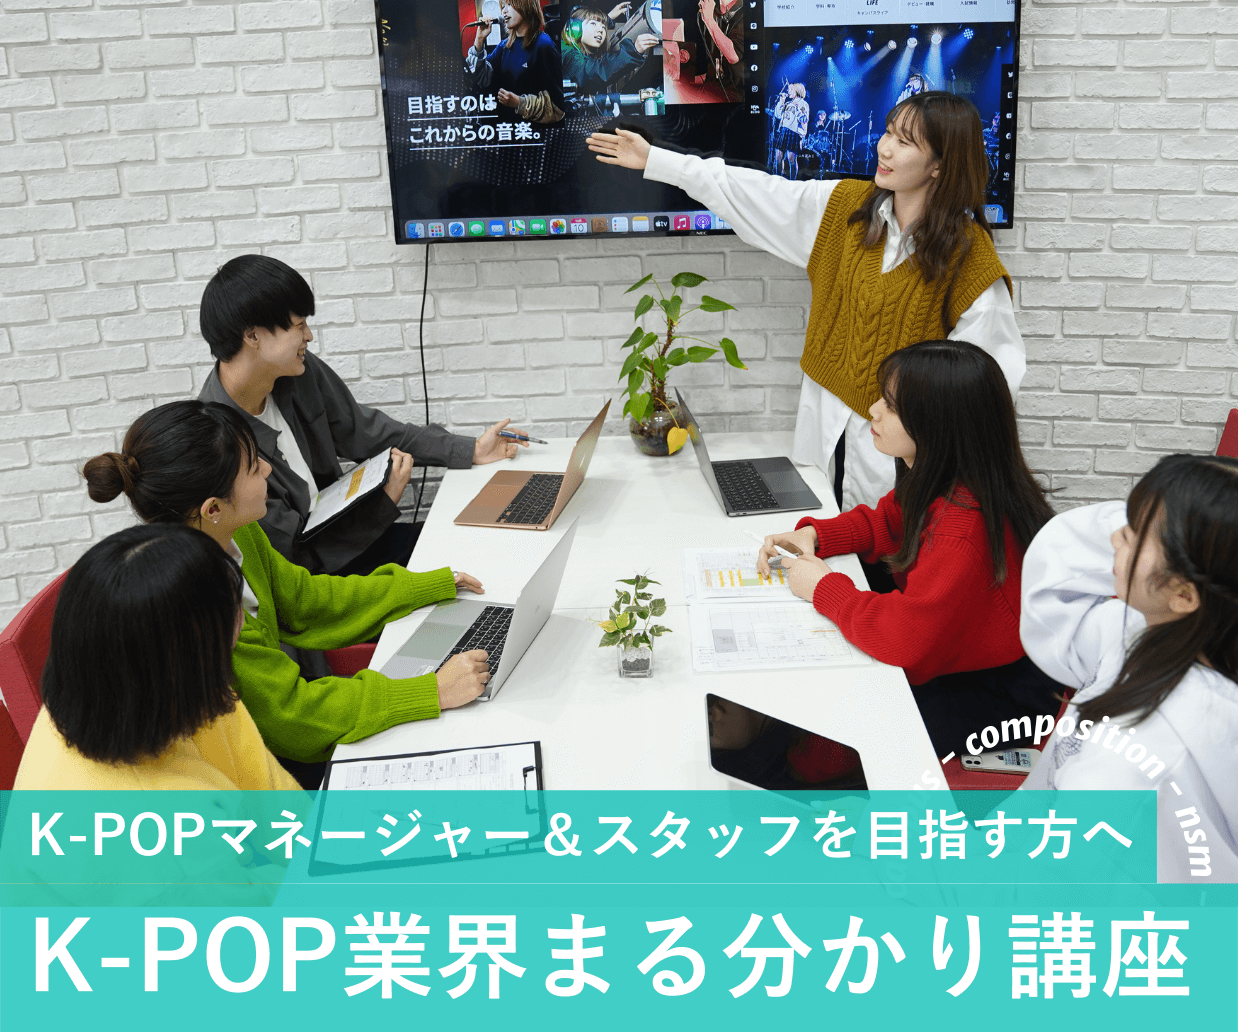 K Popマネージャー スタッフを目指す方へk Pop業界まる分かり講座 イベント 説明会 Nsm名古屋スクールオブミュージック ダンス専門学校